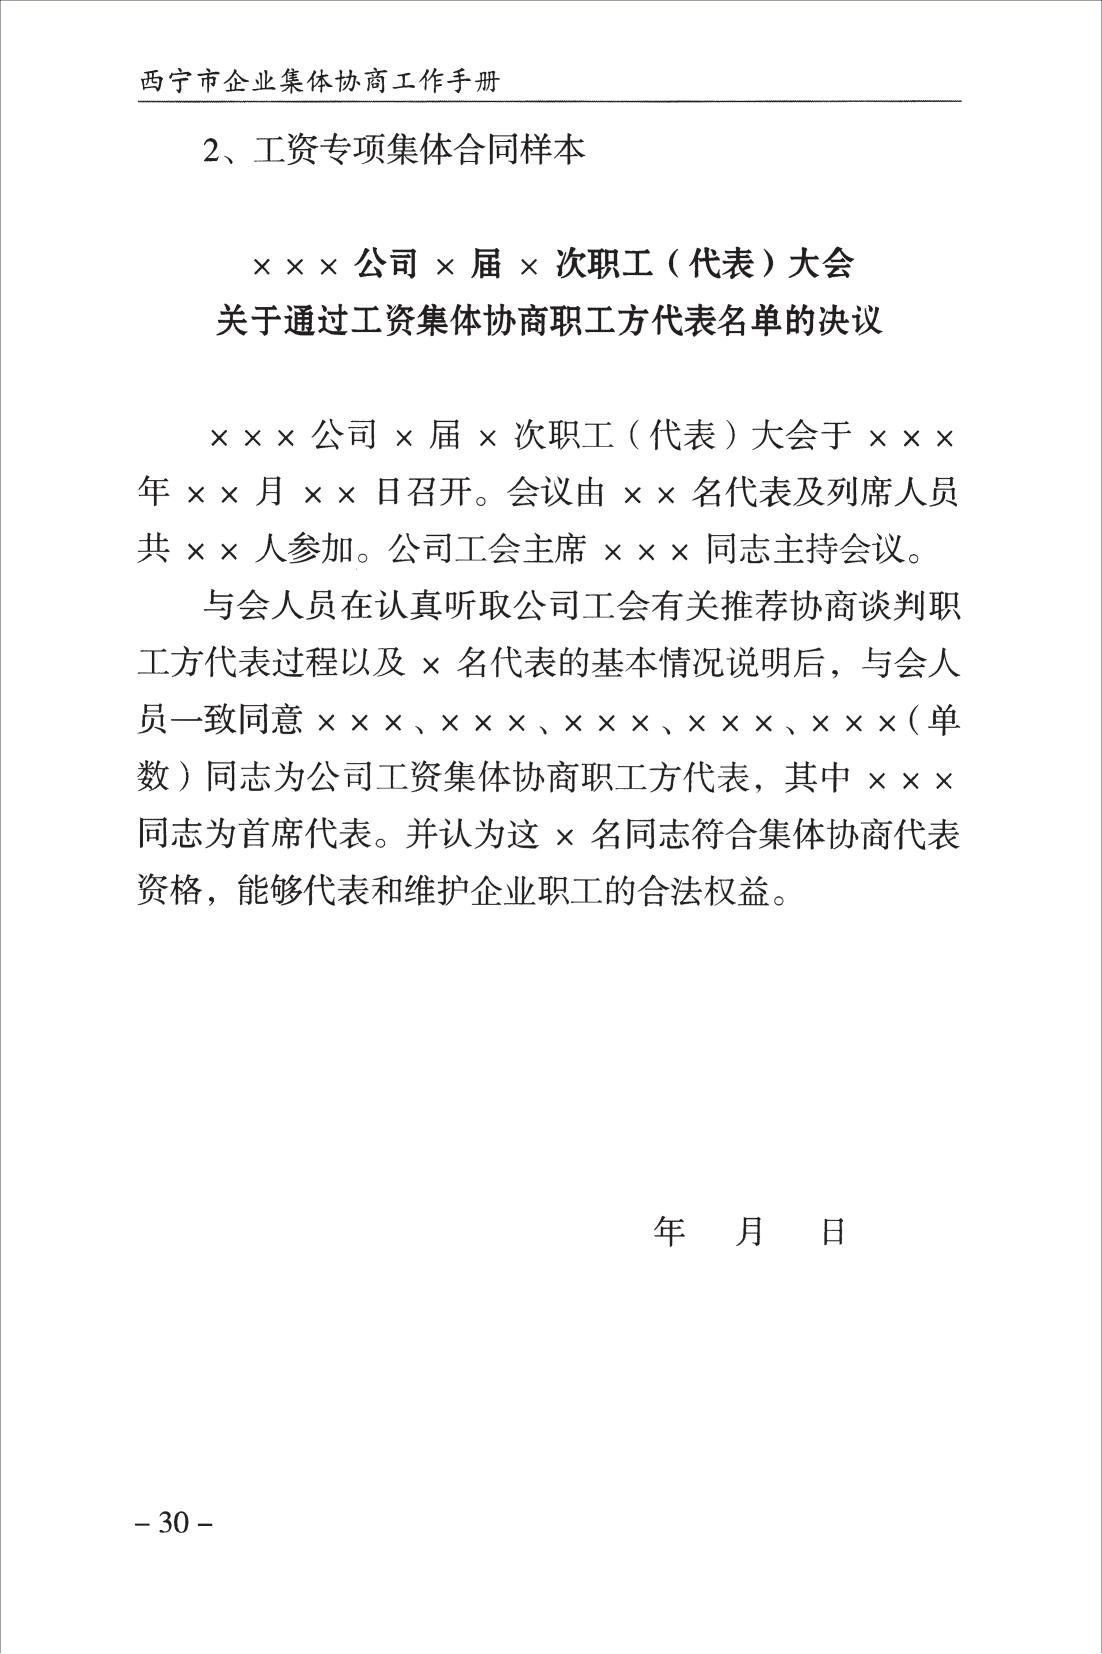 西宁市企业集体协商工作手册_32.jpg